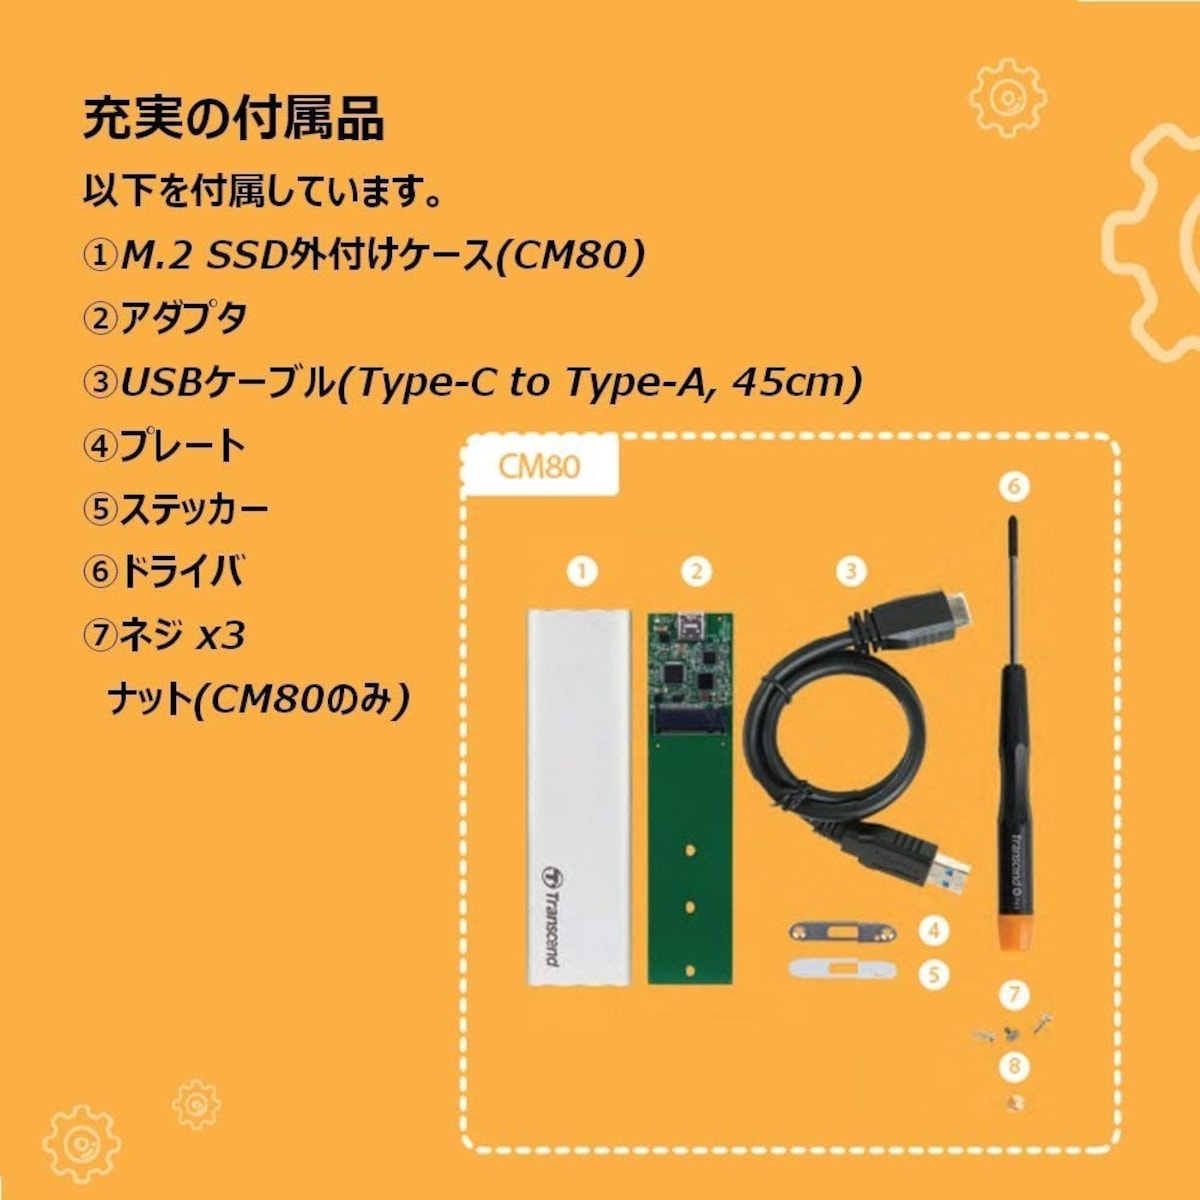  USB3.1 M.2 SSD外付けケース画像3 